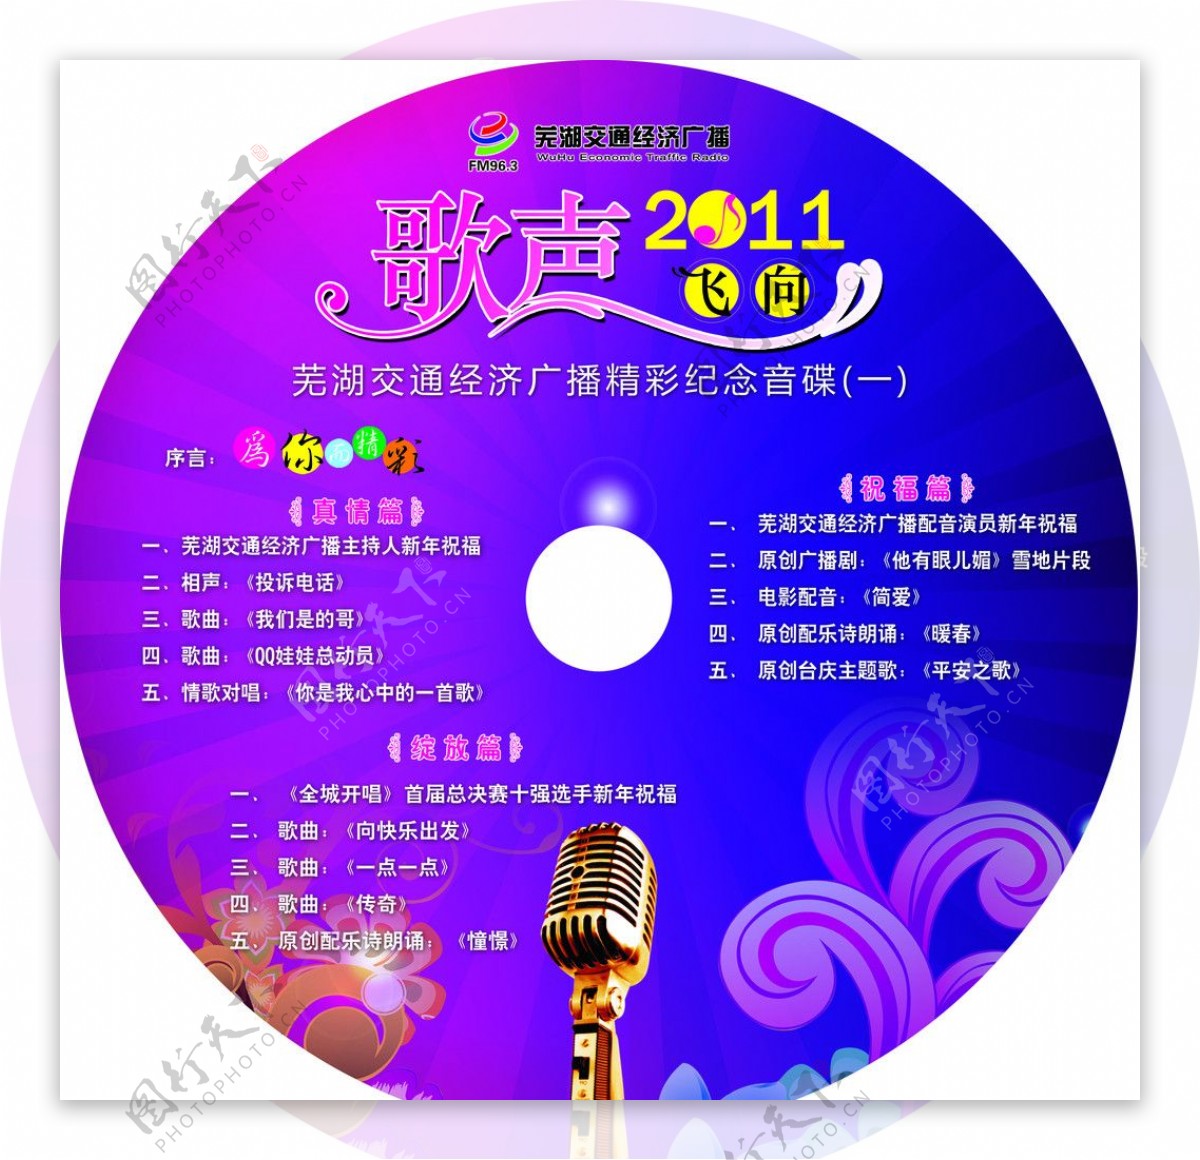 芜湖广电歌声飞向2011碟片图片